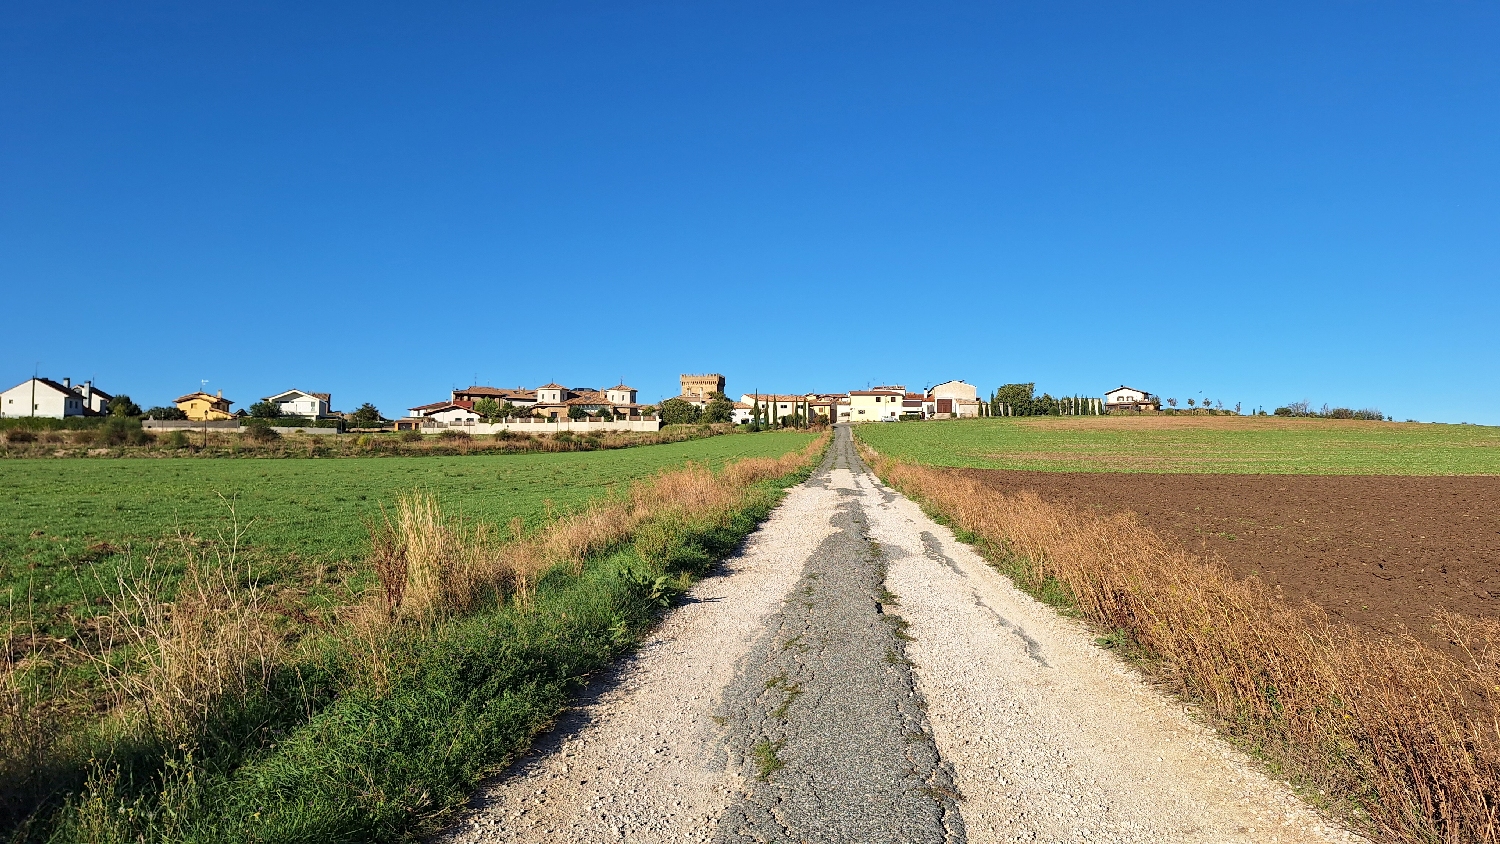 El Camino, Aragon út, már közelebb van Olcoz falu, de az út nem vezet be a településre, hanem előtte elkanyarodik jobbra